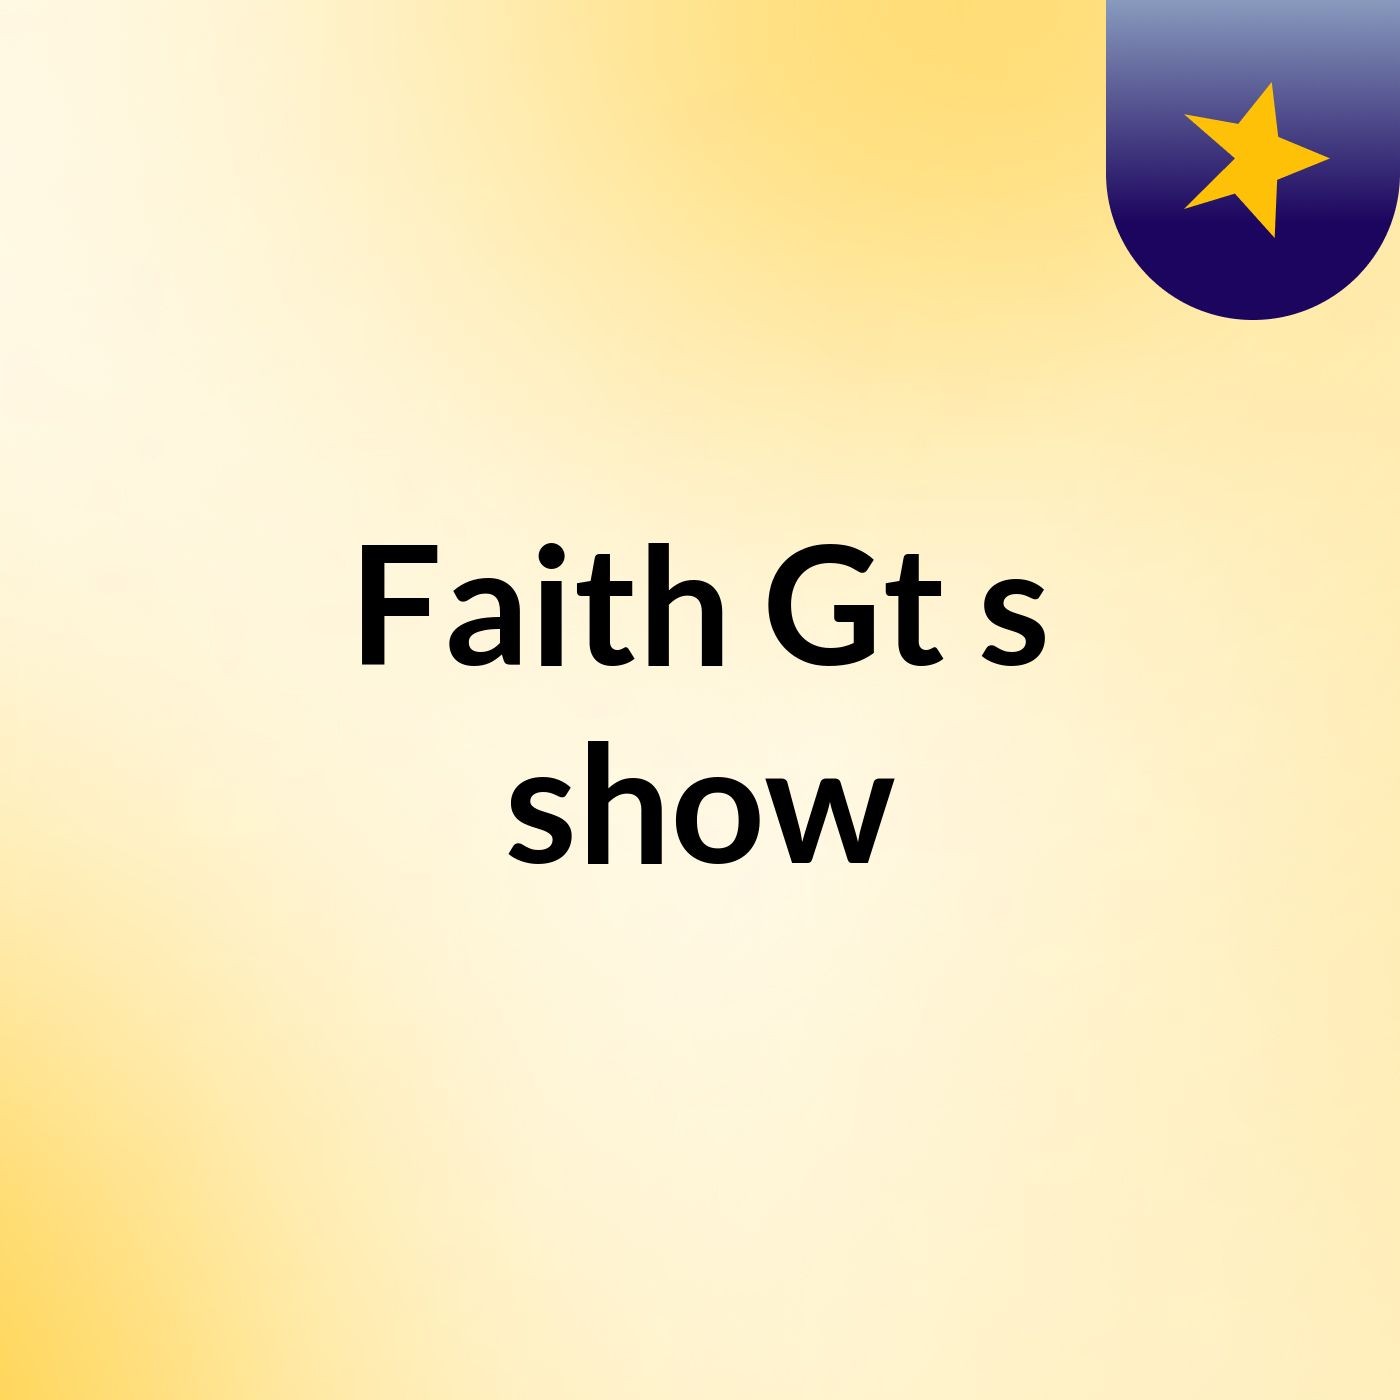 Faith Gt's show